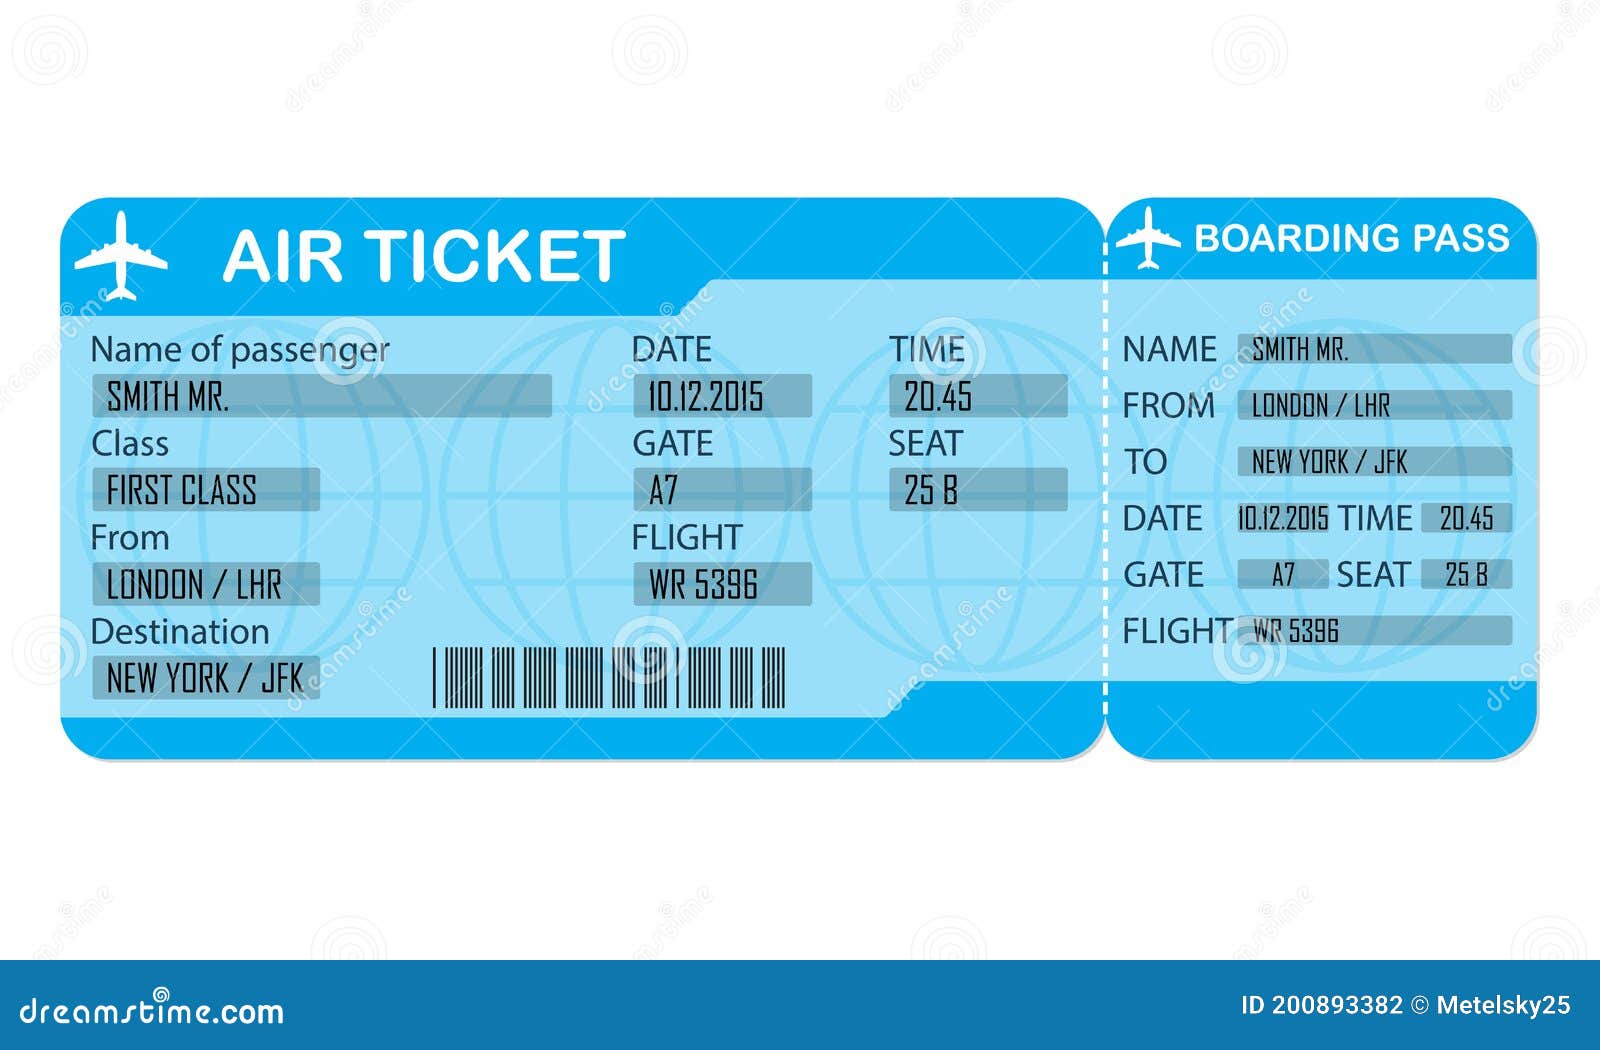 Ticket de. Билеты на самолет. Air ticket. Бланк авиабилета пустой. Конверты посадочных билетов.